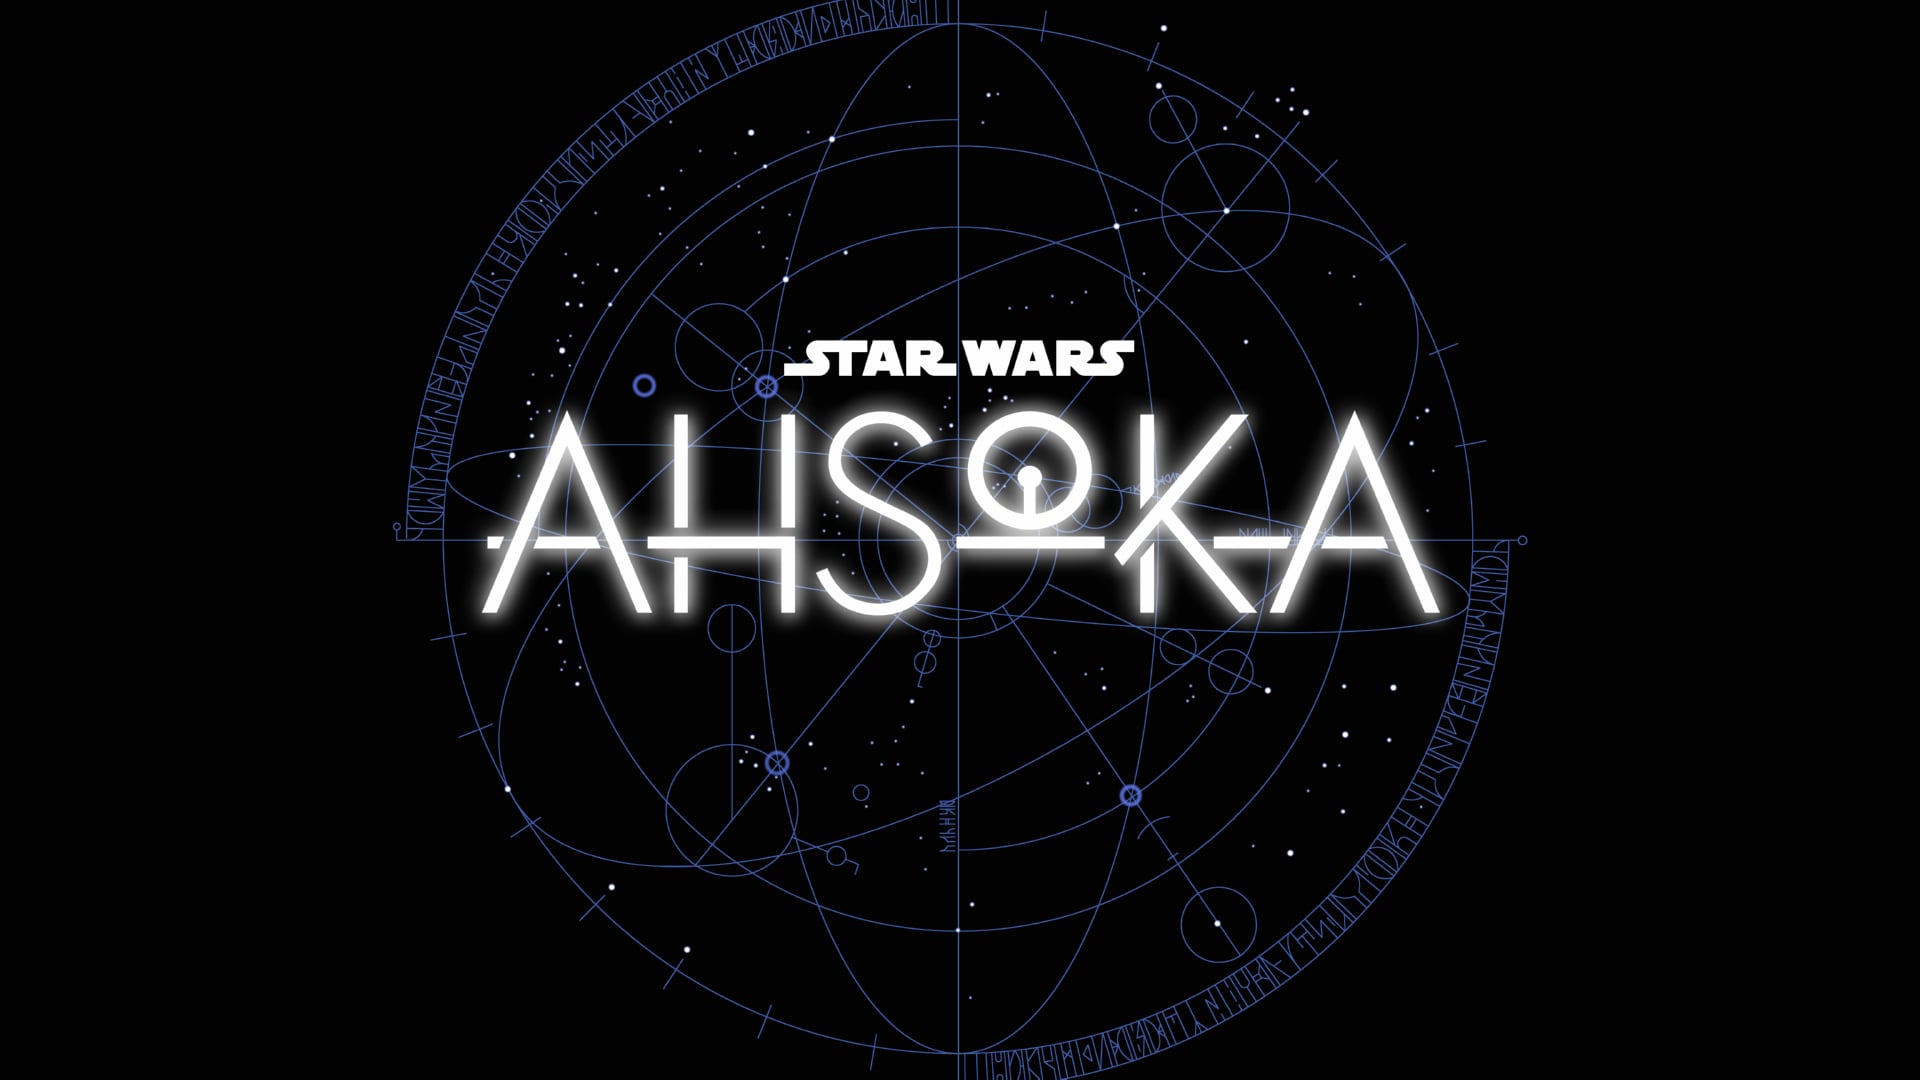 Digital Art Star Wars Ahsoka at 1024 x 1024 iPad size wallpapers HD quality